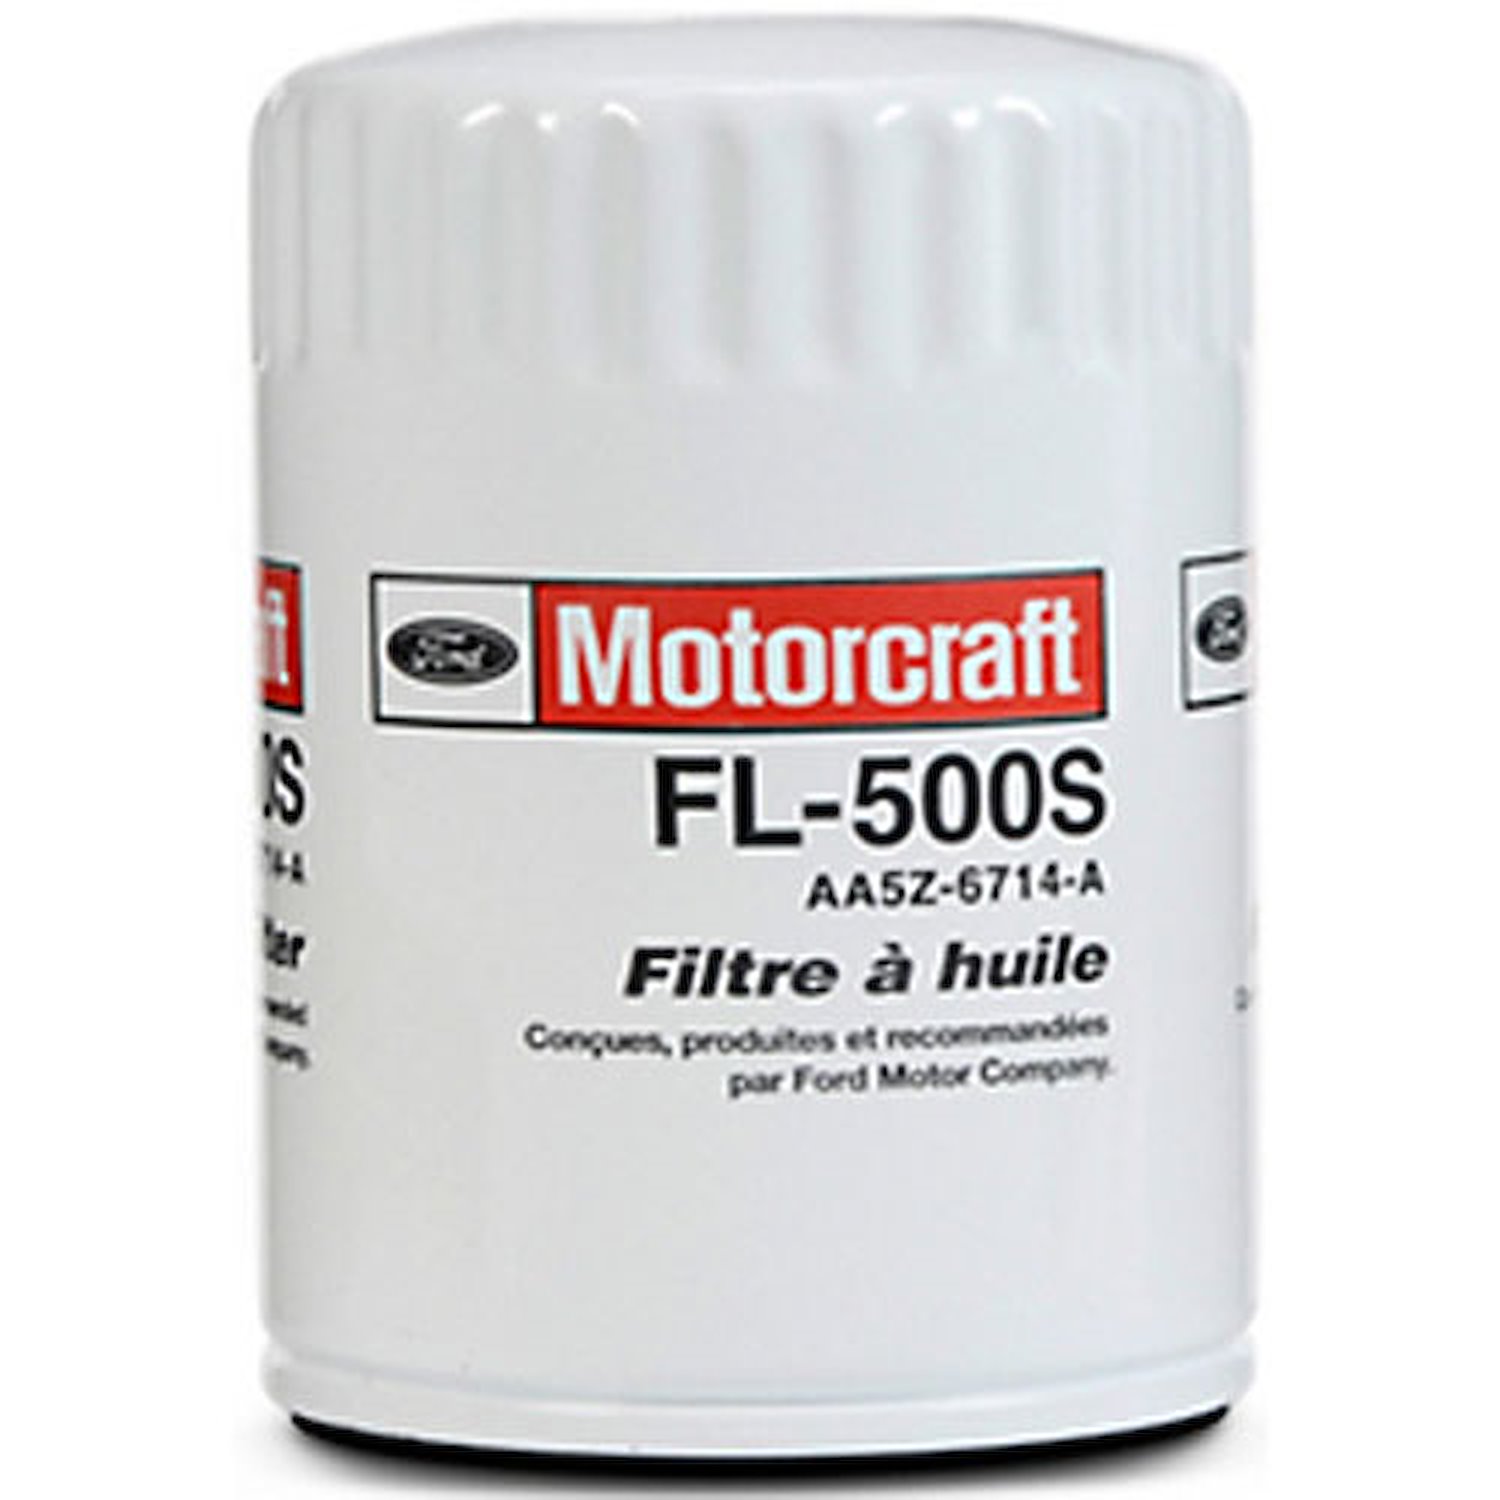 Ford motorcraft oil filter application #9